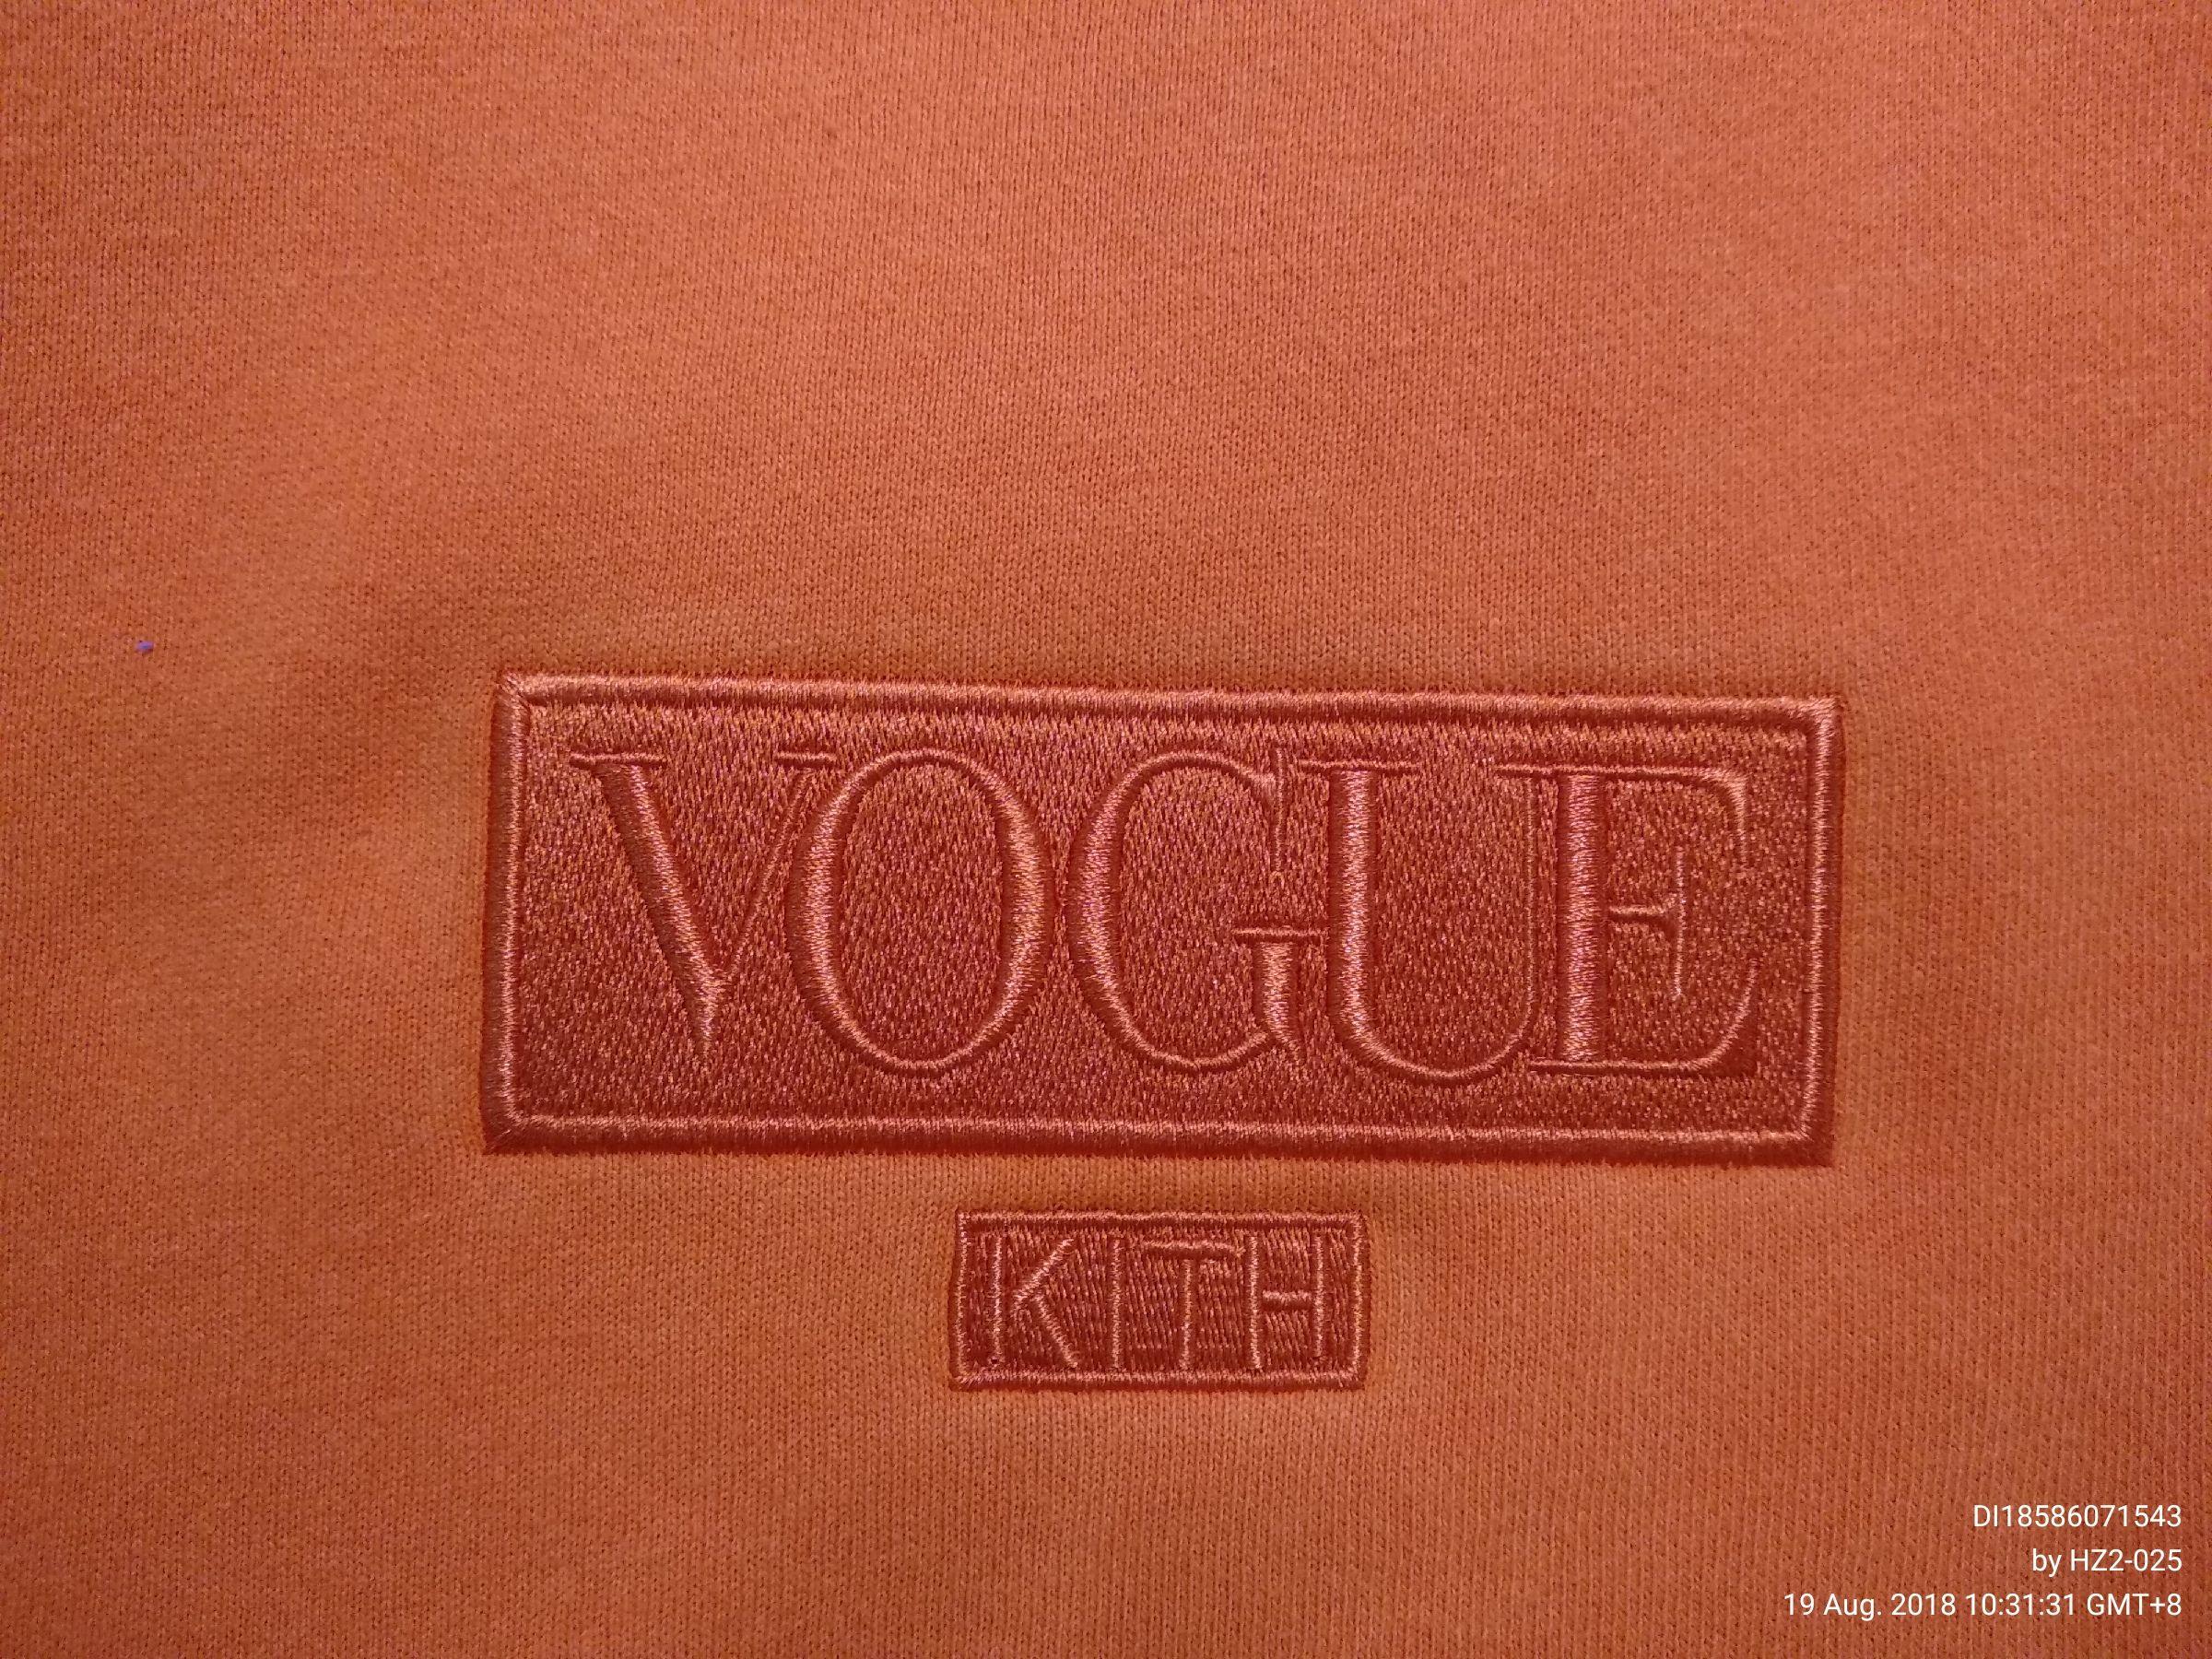 Kith Logo - QC This Vogue Kith logo please